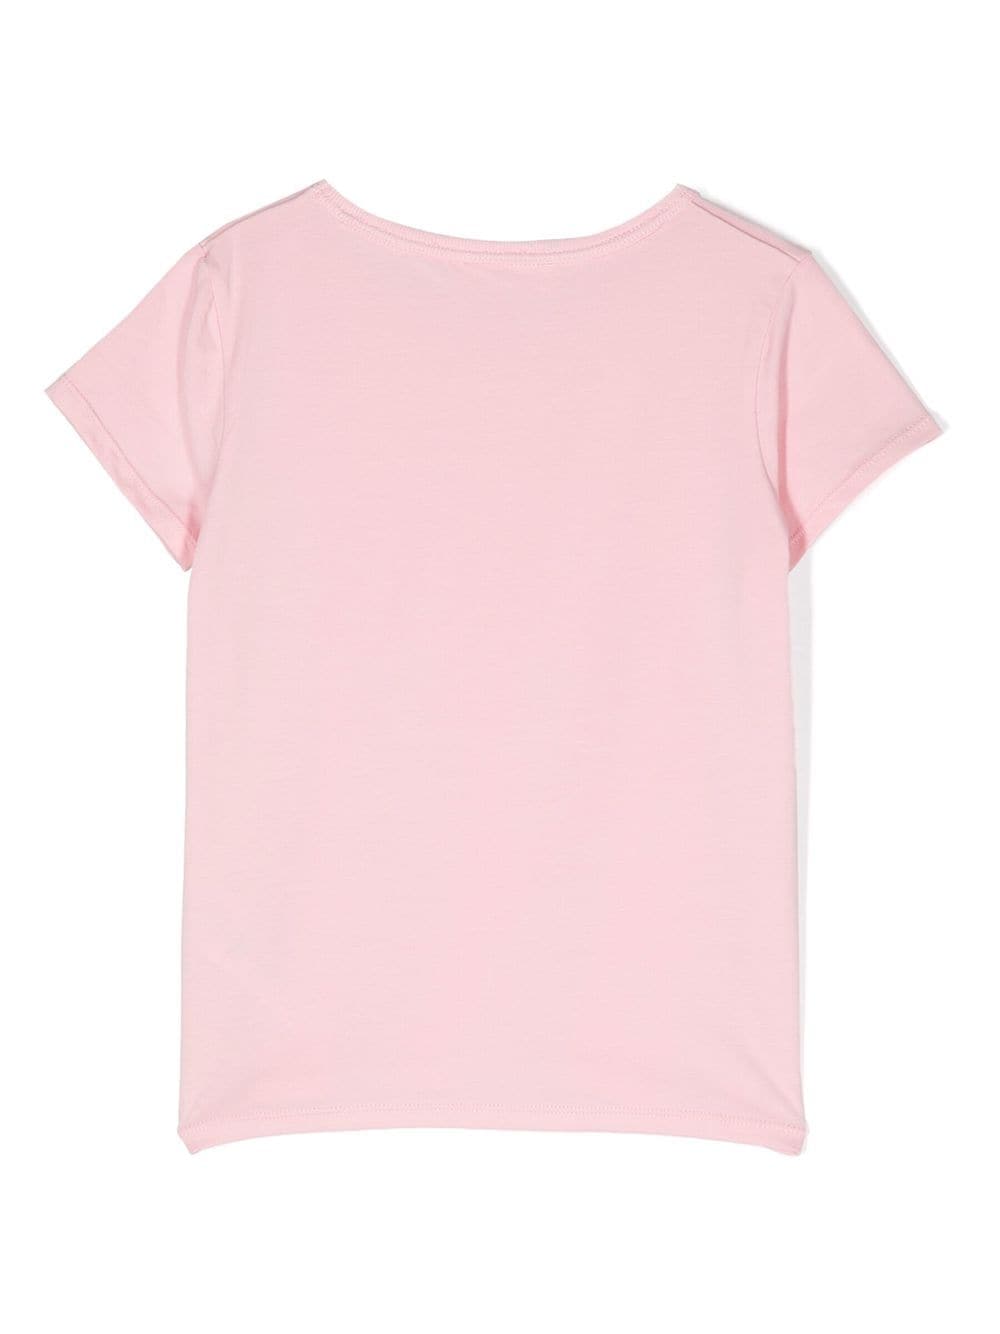 Michael Kors Kids T-shirt met ronde hals - Roze